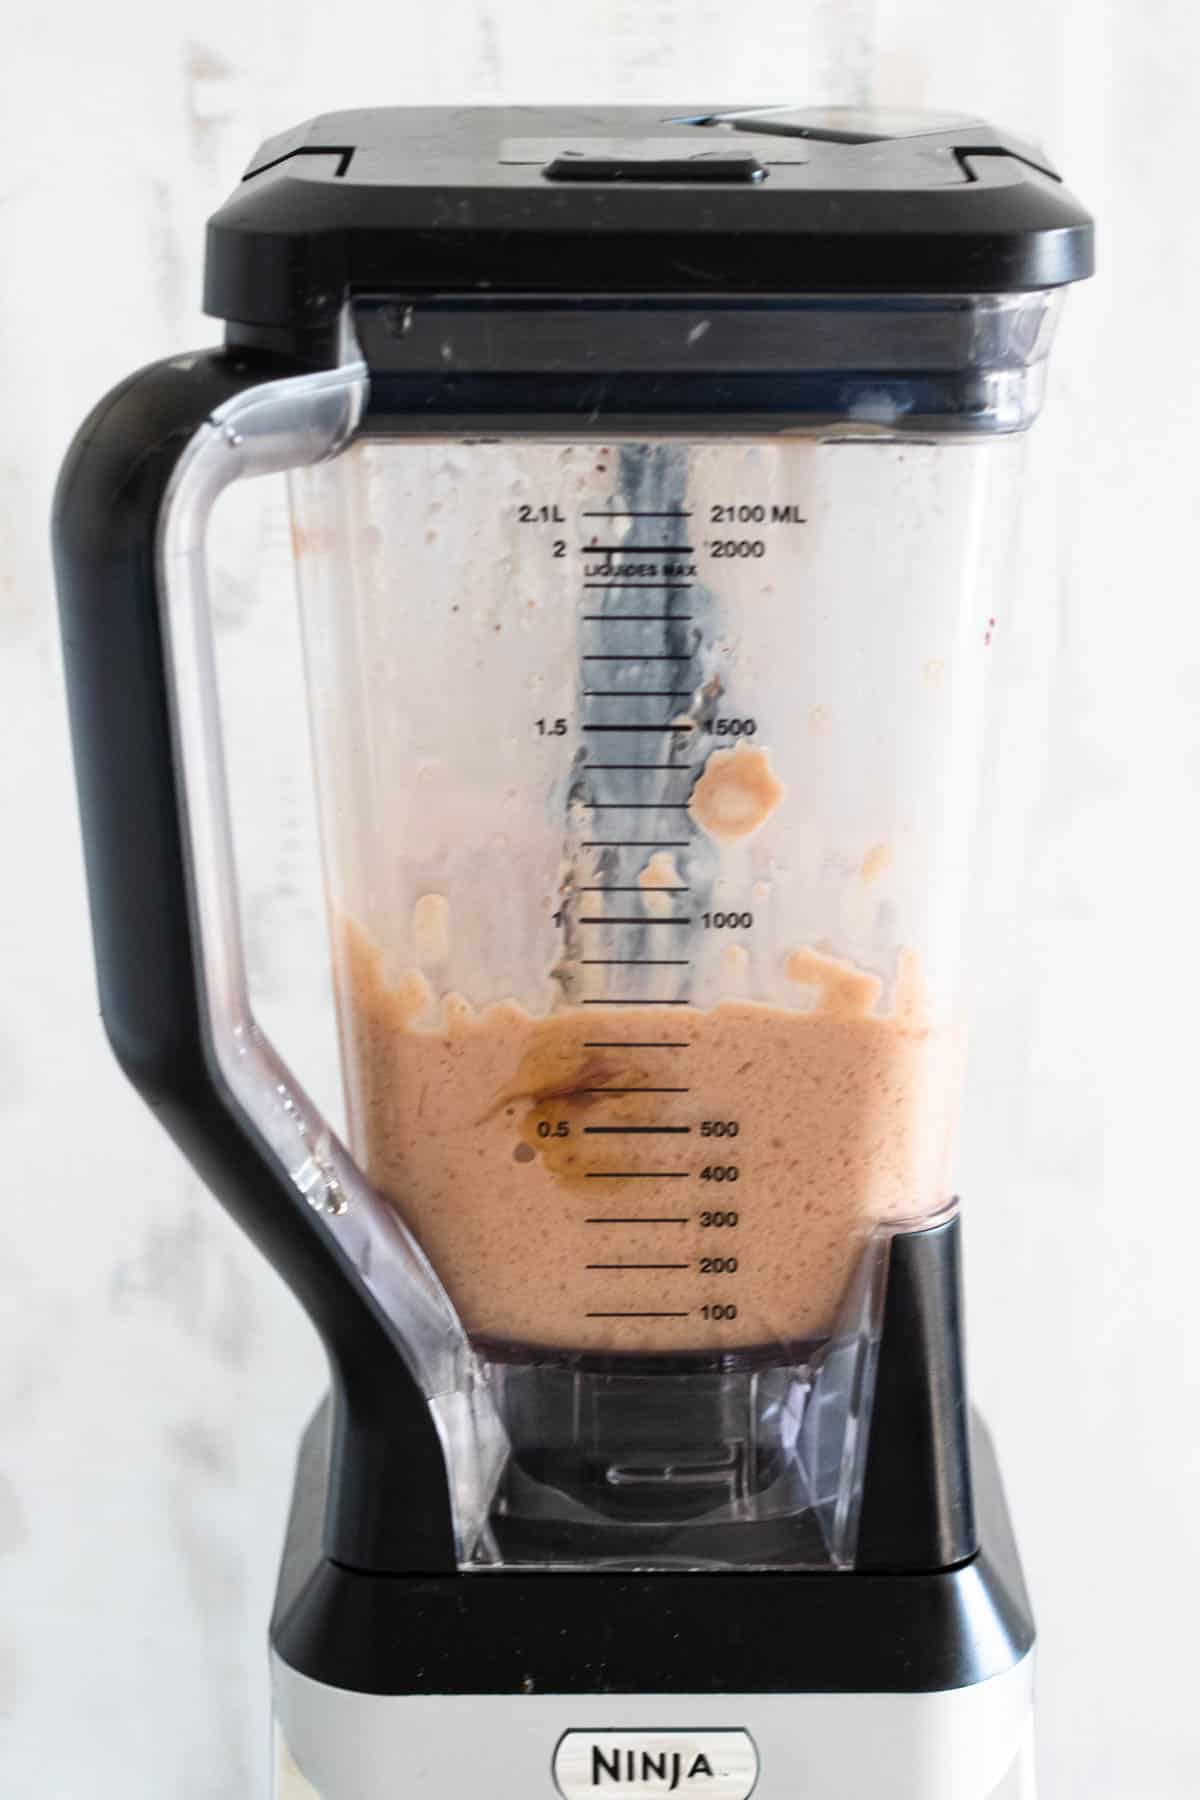 blender with blended coffee smoothie ingredients